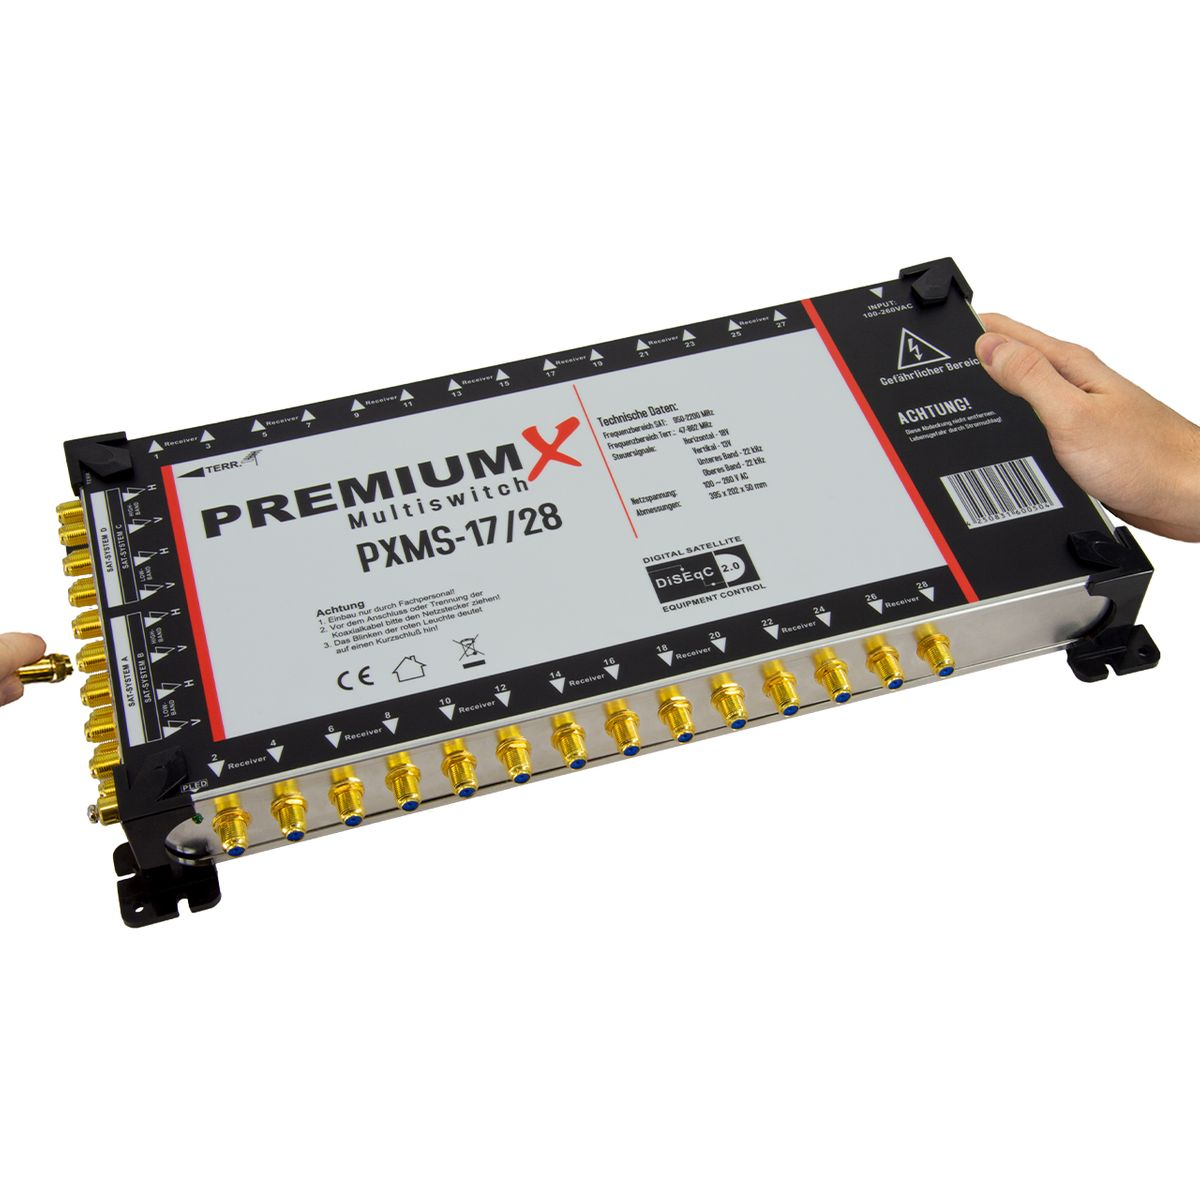 PREMIUMX Multischalter Set 17/28 80x Quattro LNB 4x Multiswitch F-Stecker Sat-Multischalter SAT